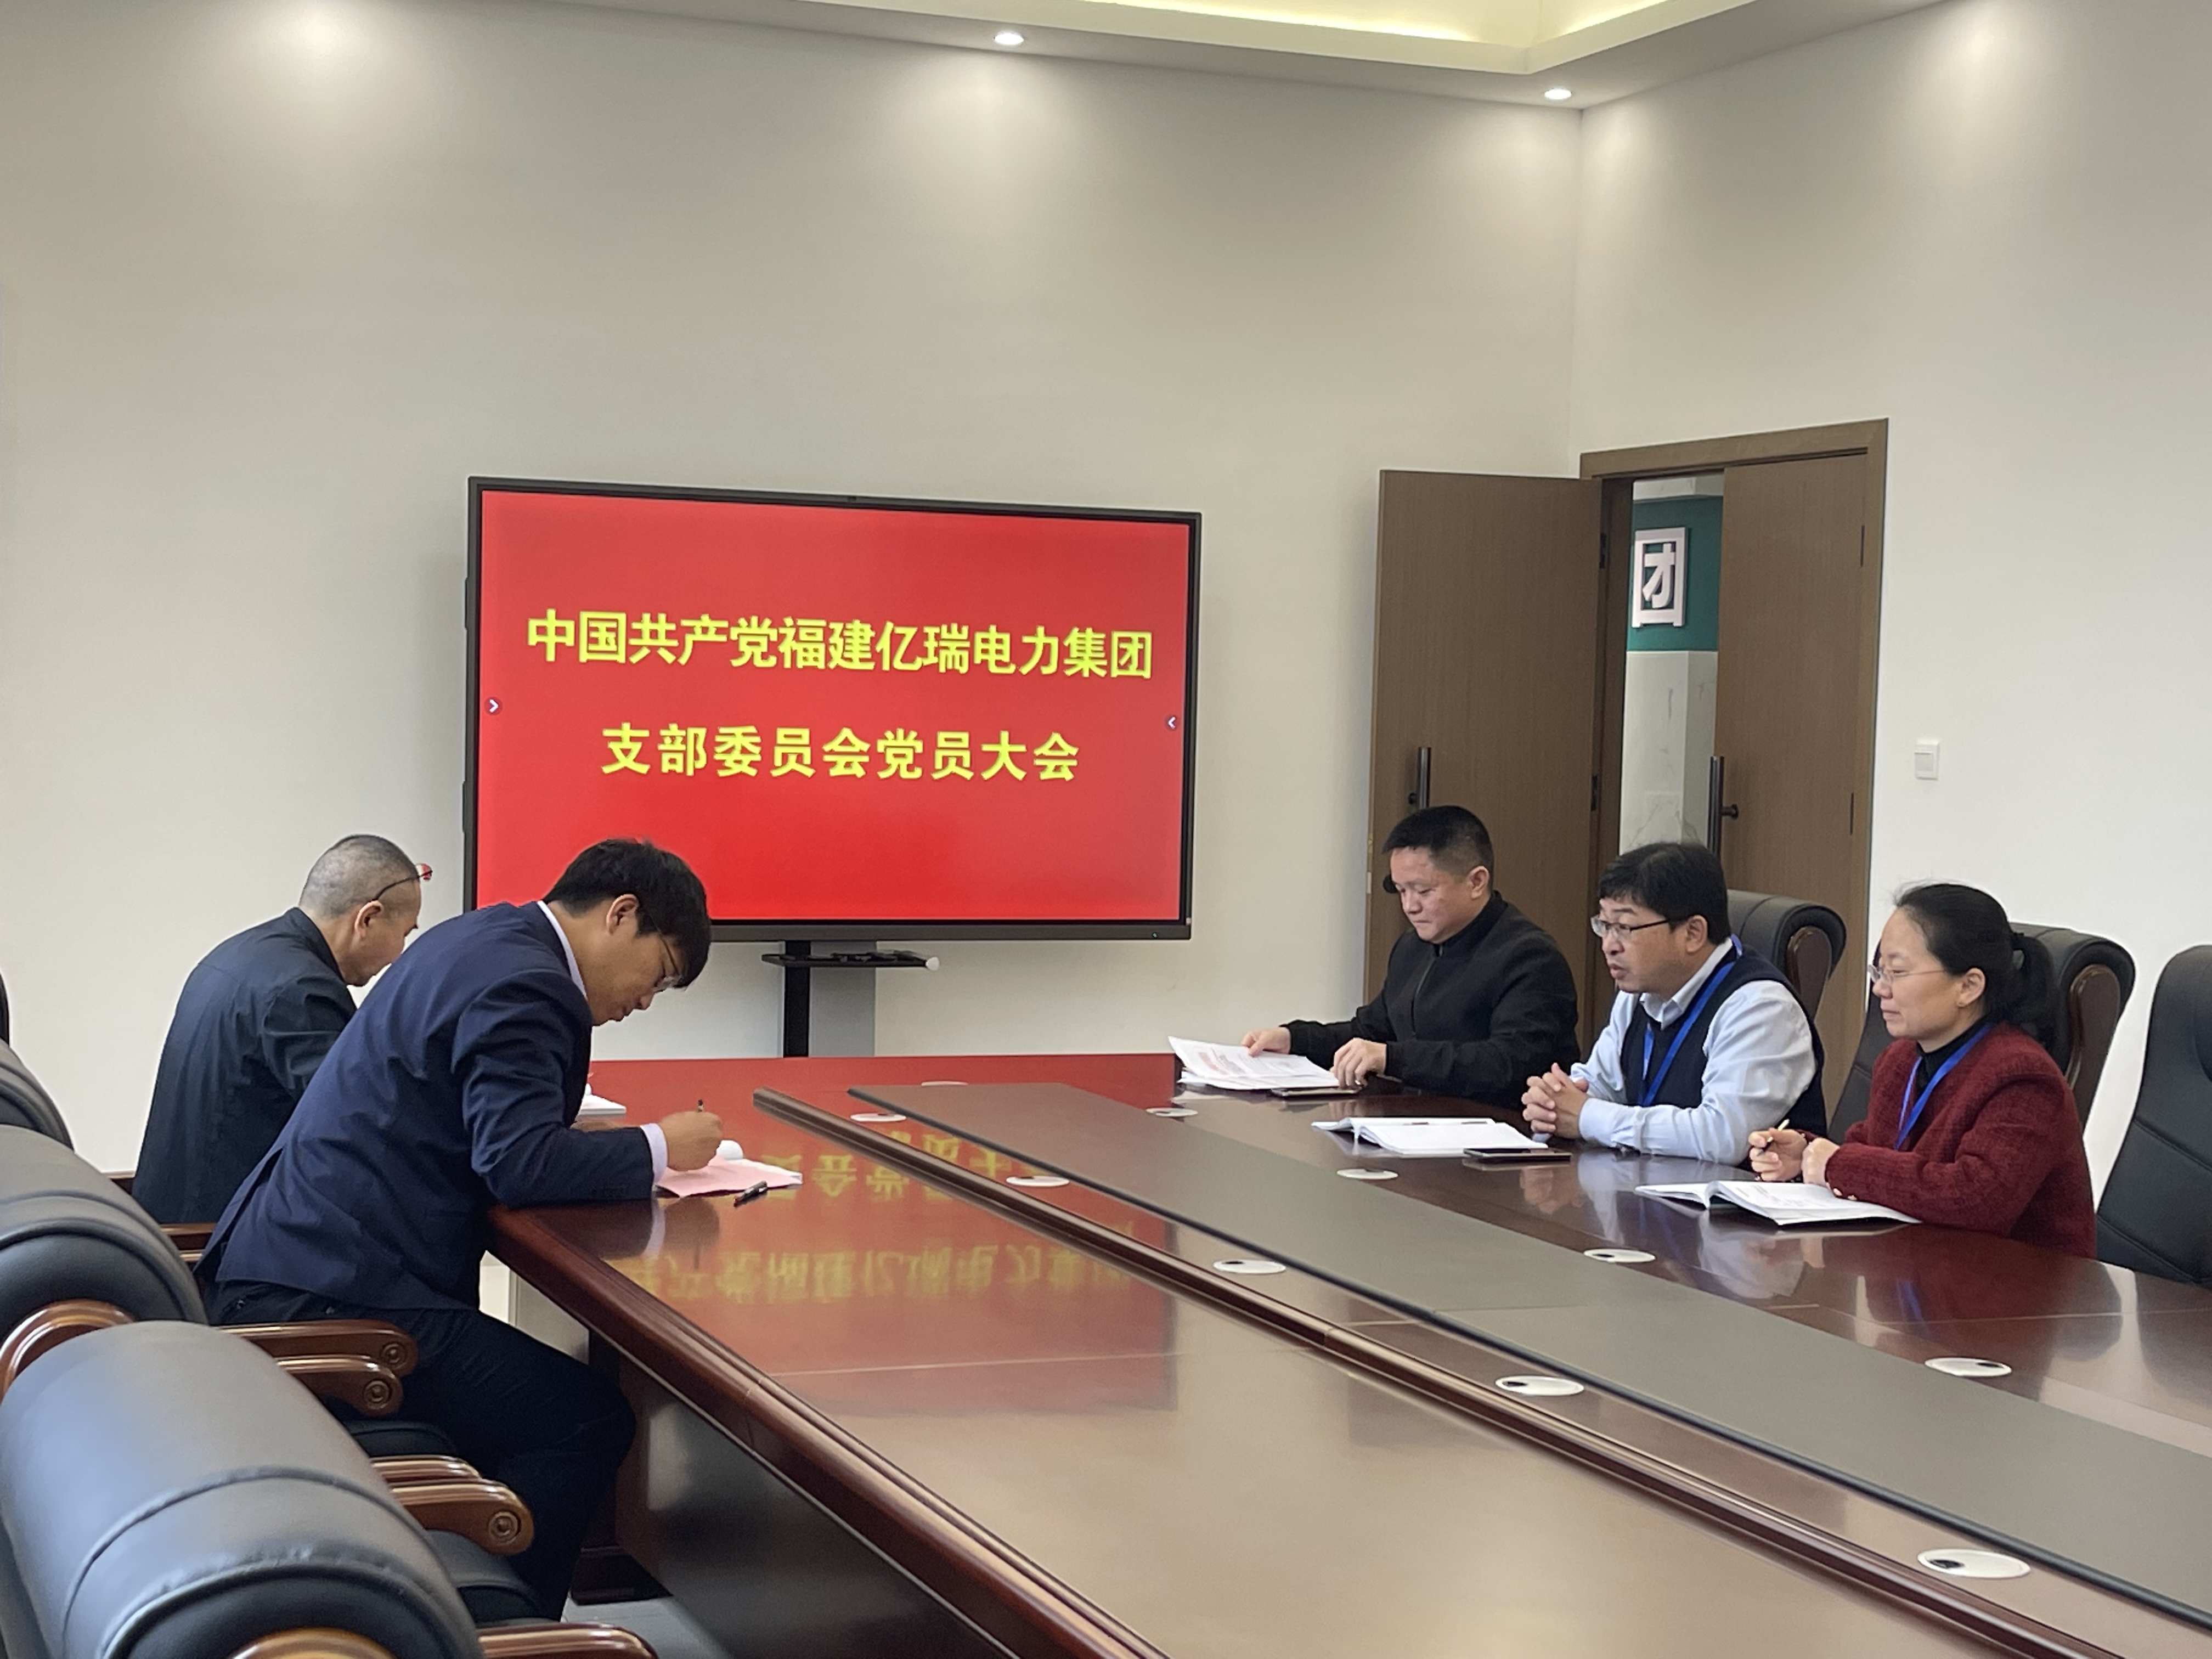 中共福建億瑞電力集團黨支部委員會組織召開第一次黨員大會